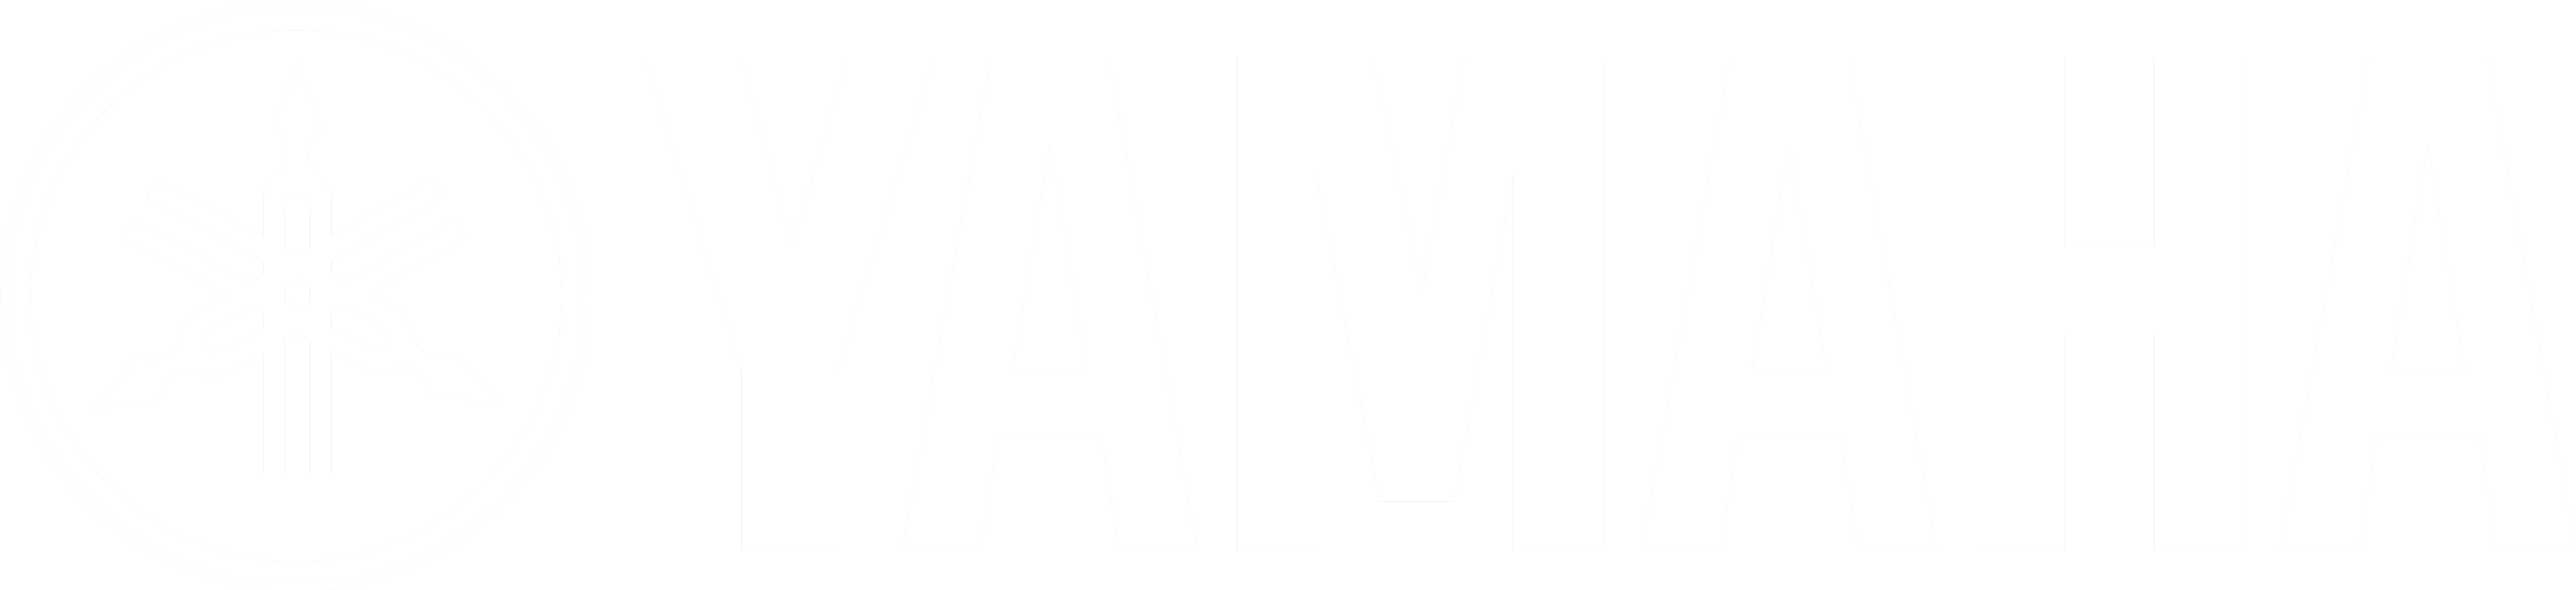 Yamaha Logo White Background PNG